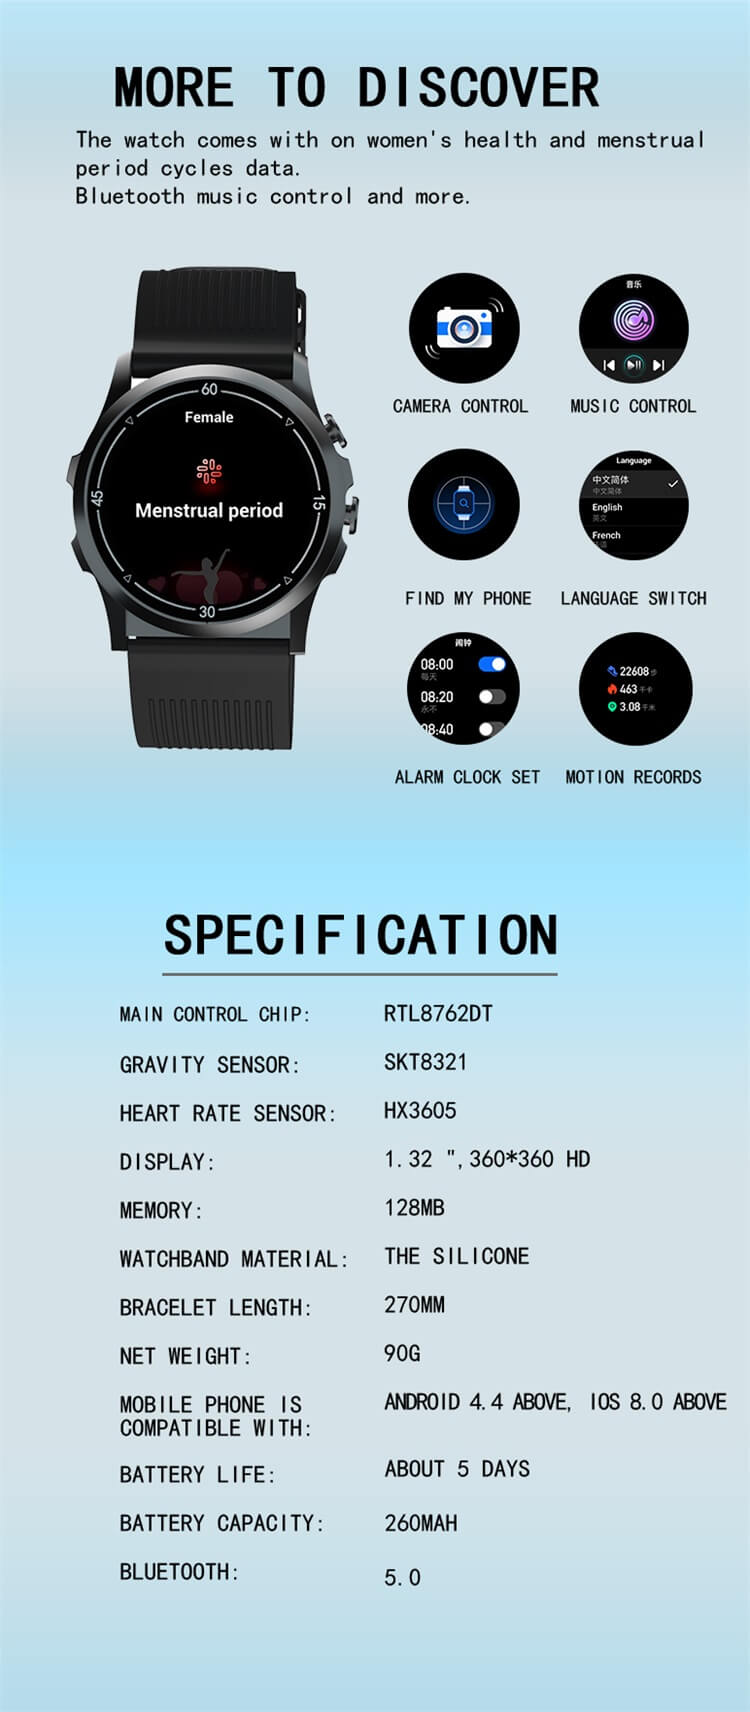 R2 Luftpumpe EKG Blutdruck Tragbare Fitness OEM Smartwatch-Shenzhen Shengye Technology Co.,Ltd